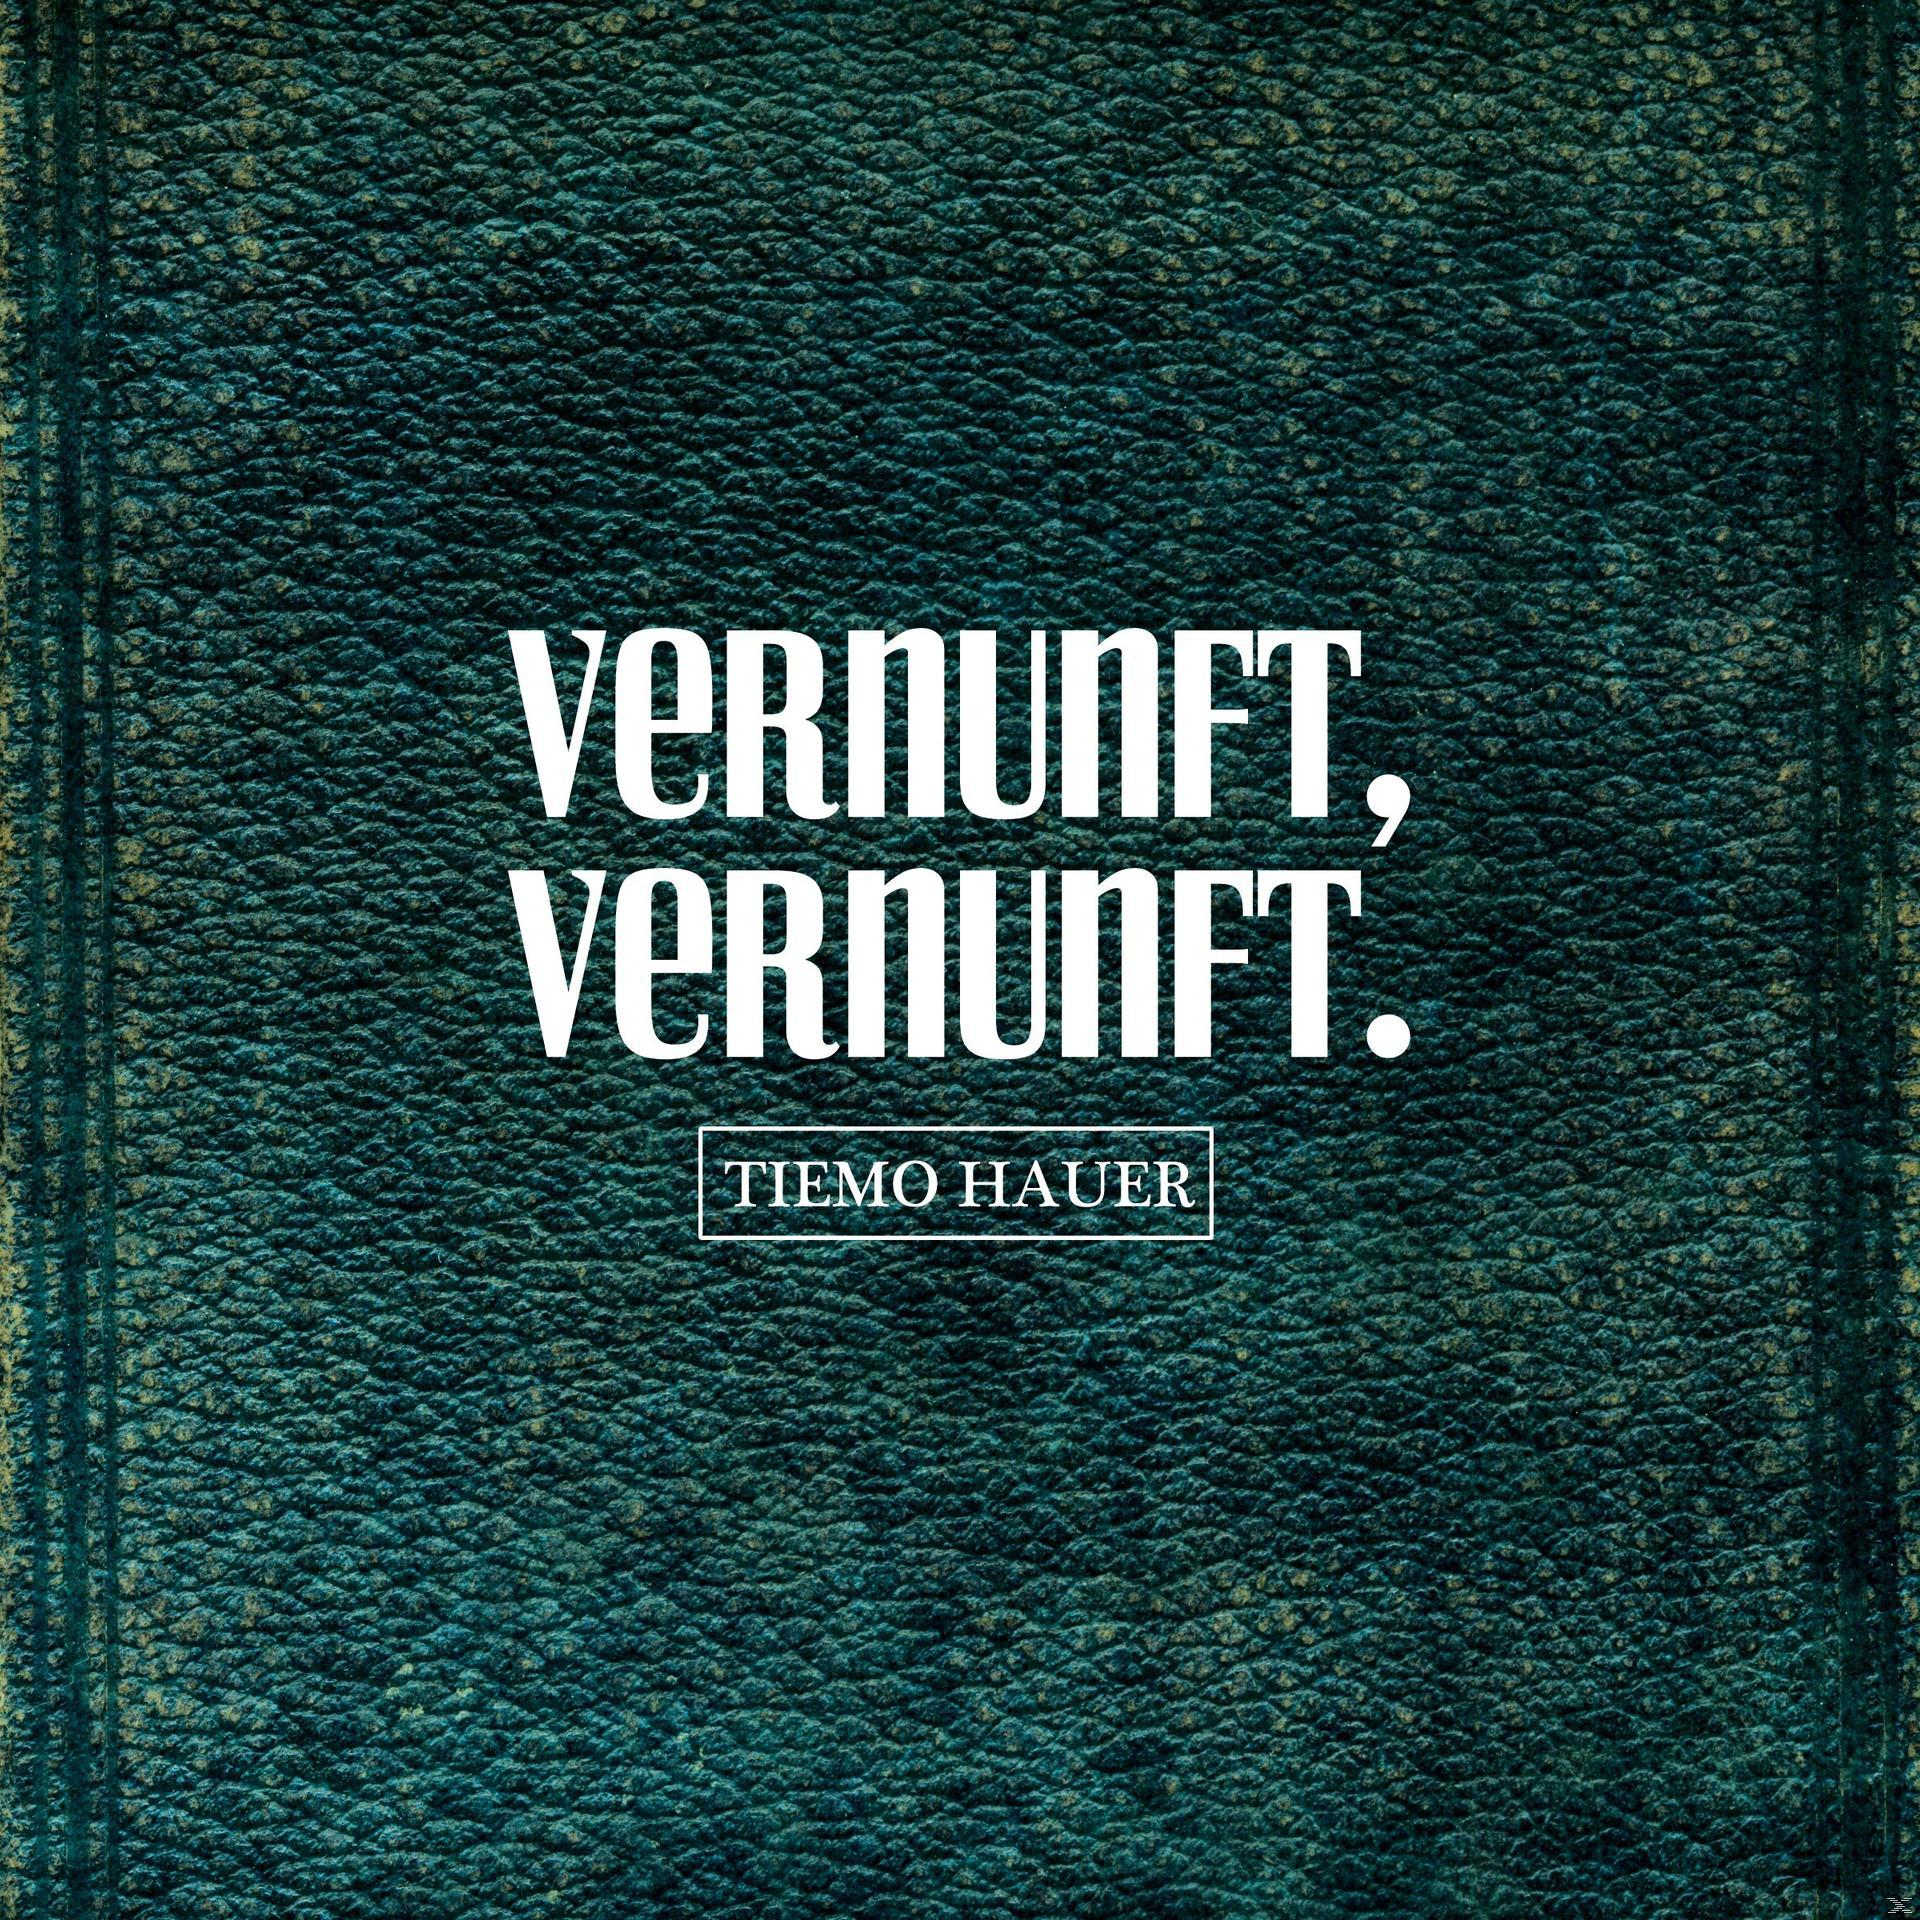 Tiemo Hauer - VERNUNFT, VERNUNFT. - (Vinyl)